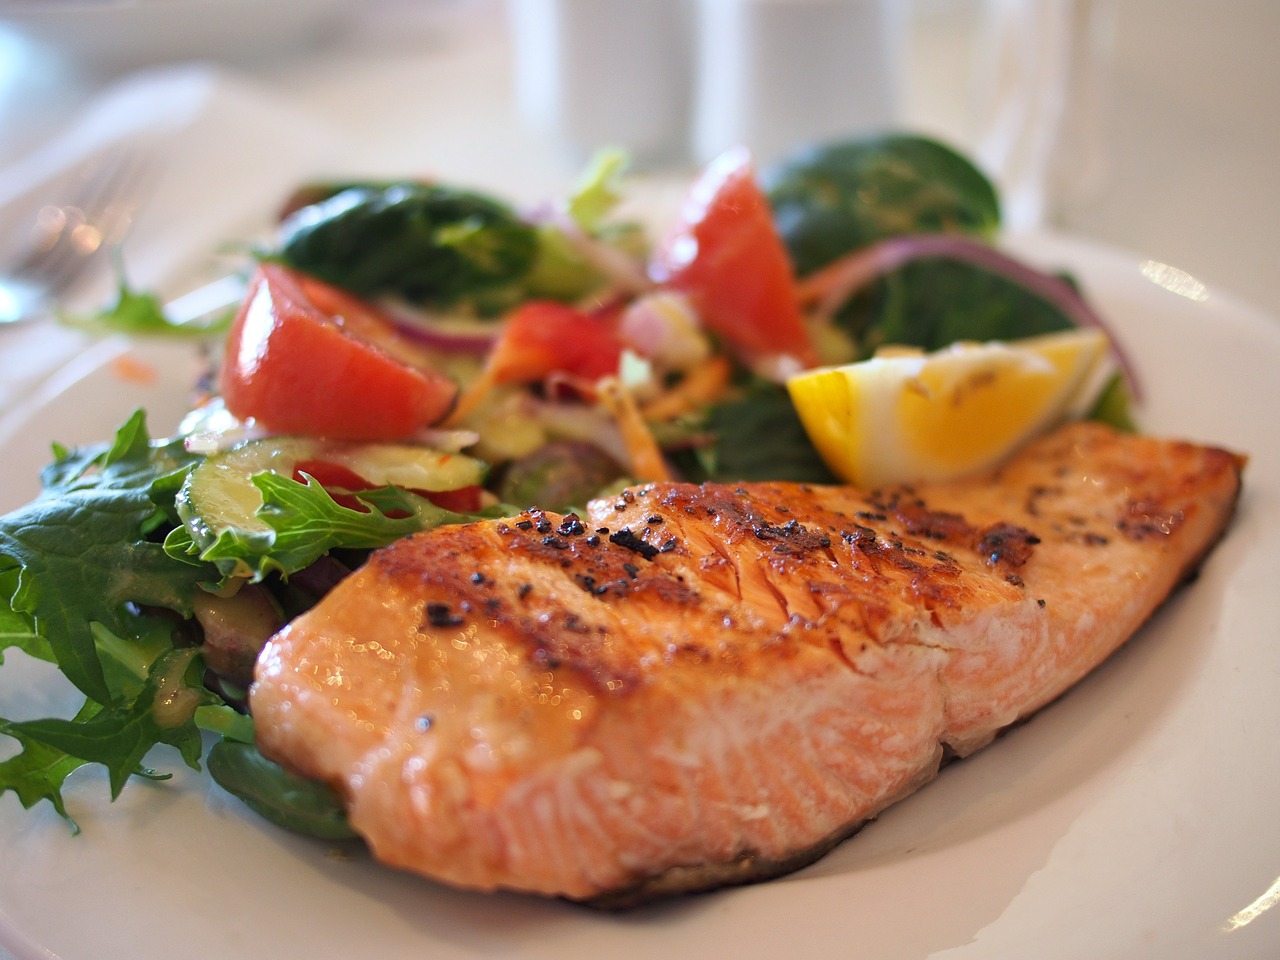 ذائقہ بھی‘ صحت بھی: مچھلی کھائیے ‘ تنومند رہئے